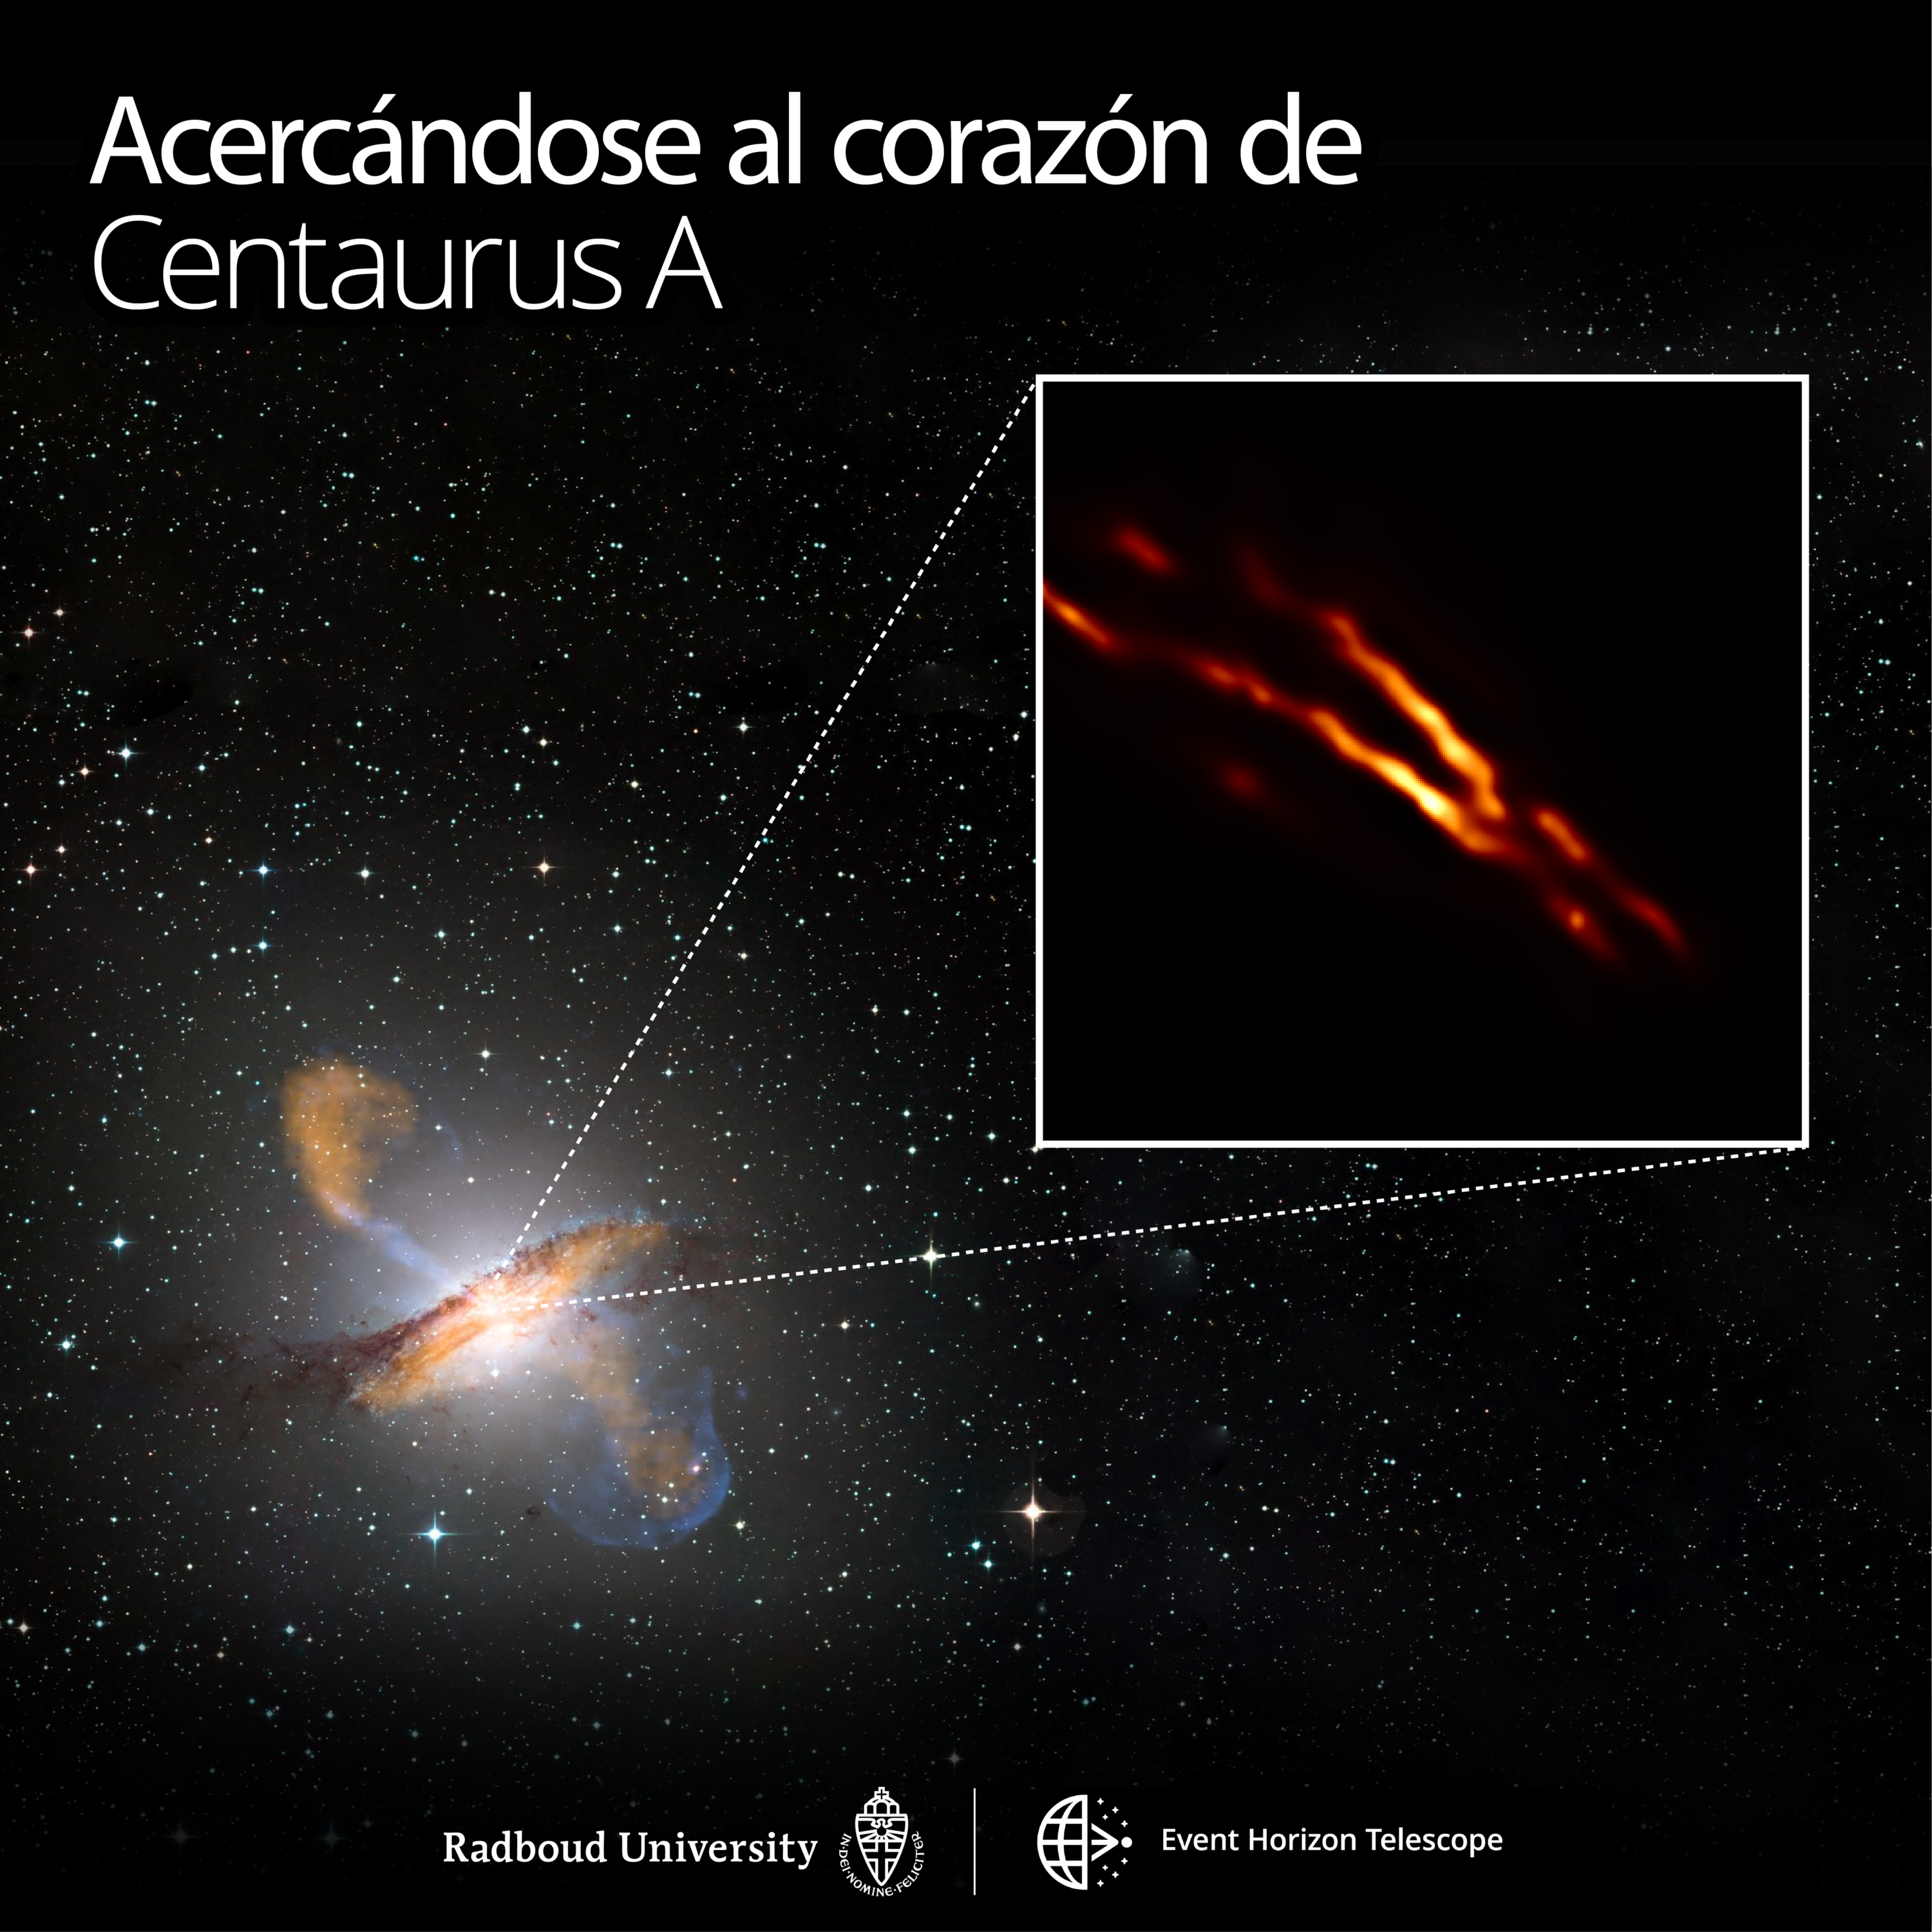 Imagen de mayor resolución de Centaurus A obtenida con el Event Horizon Telescope encima de una imagen de colores compuestos de toda la galaxia. Crédito: Universidad de Radboud; ESO/WFI; MPIfR/ESO/APEX/A. Weiss et al.; NASA/CXC/CfA/R. Kraft y col .; EHT/M. Janssen y col.